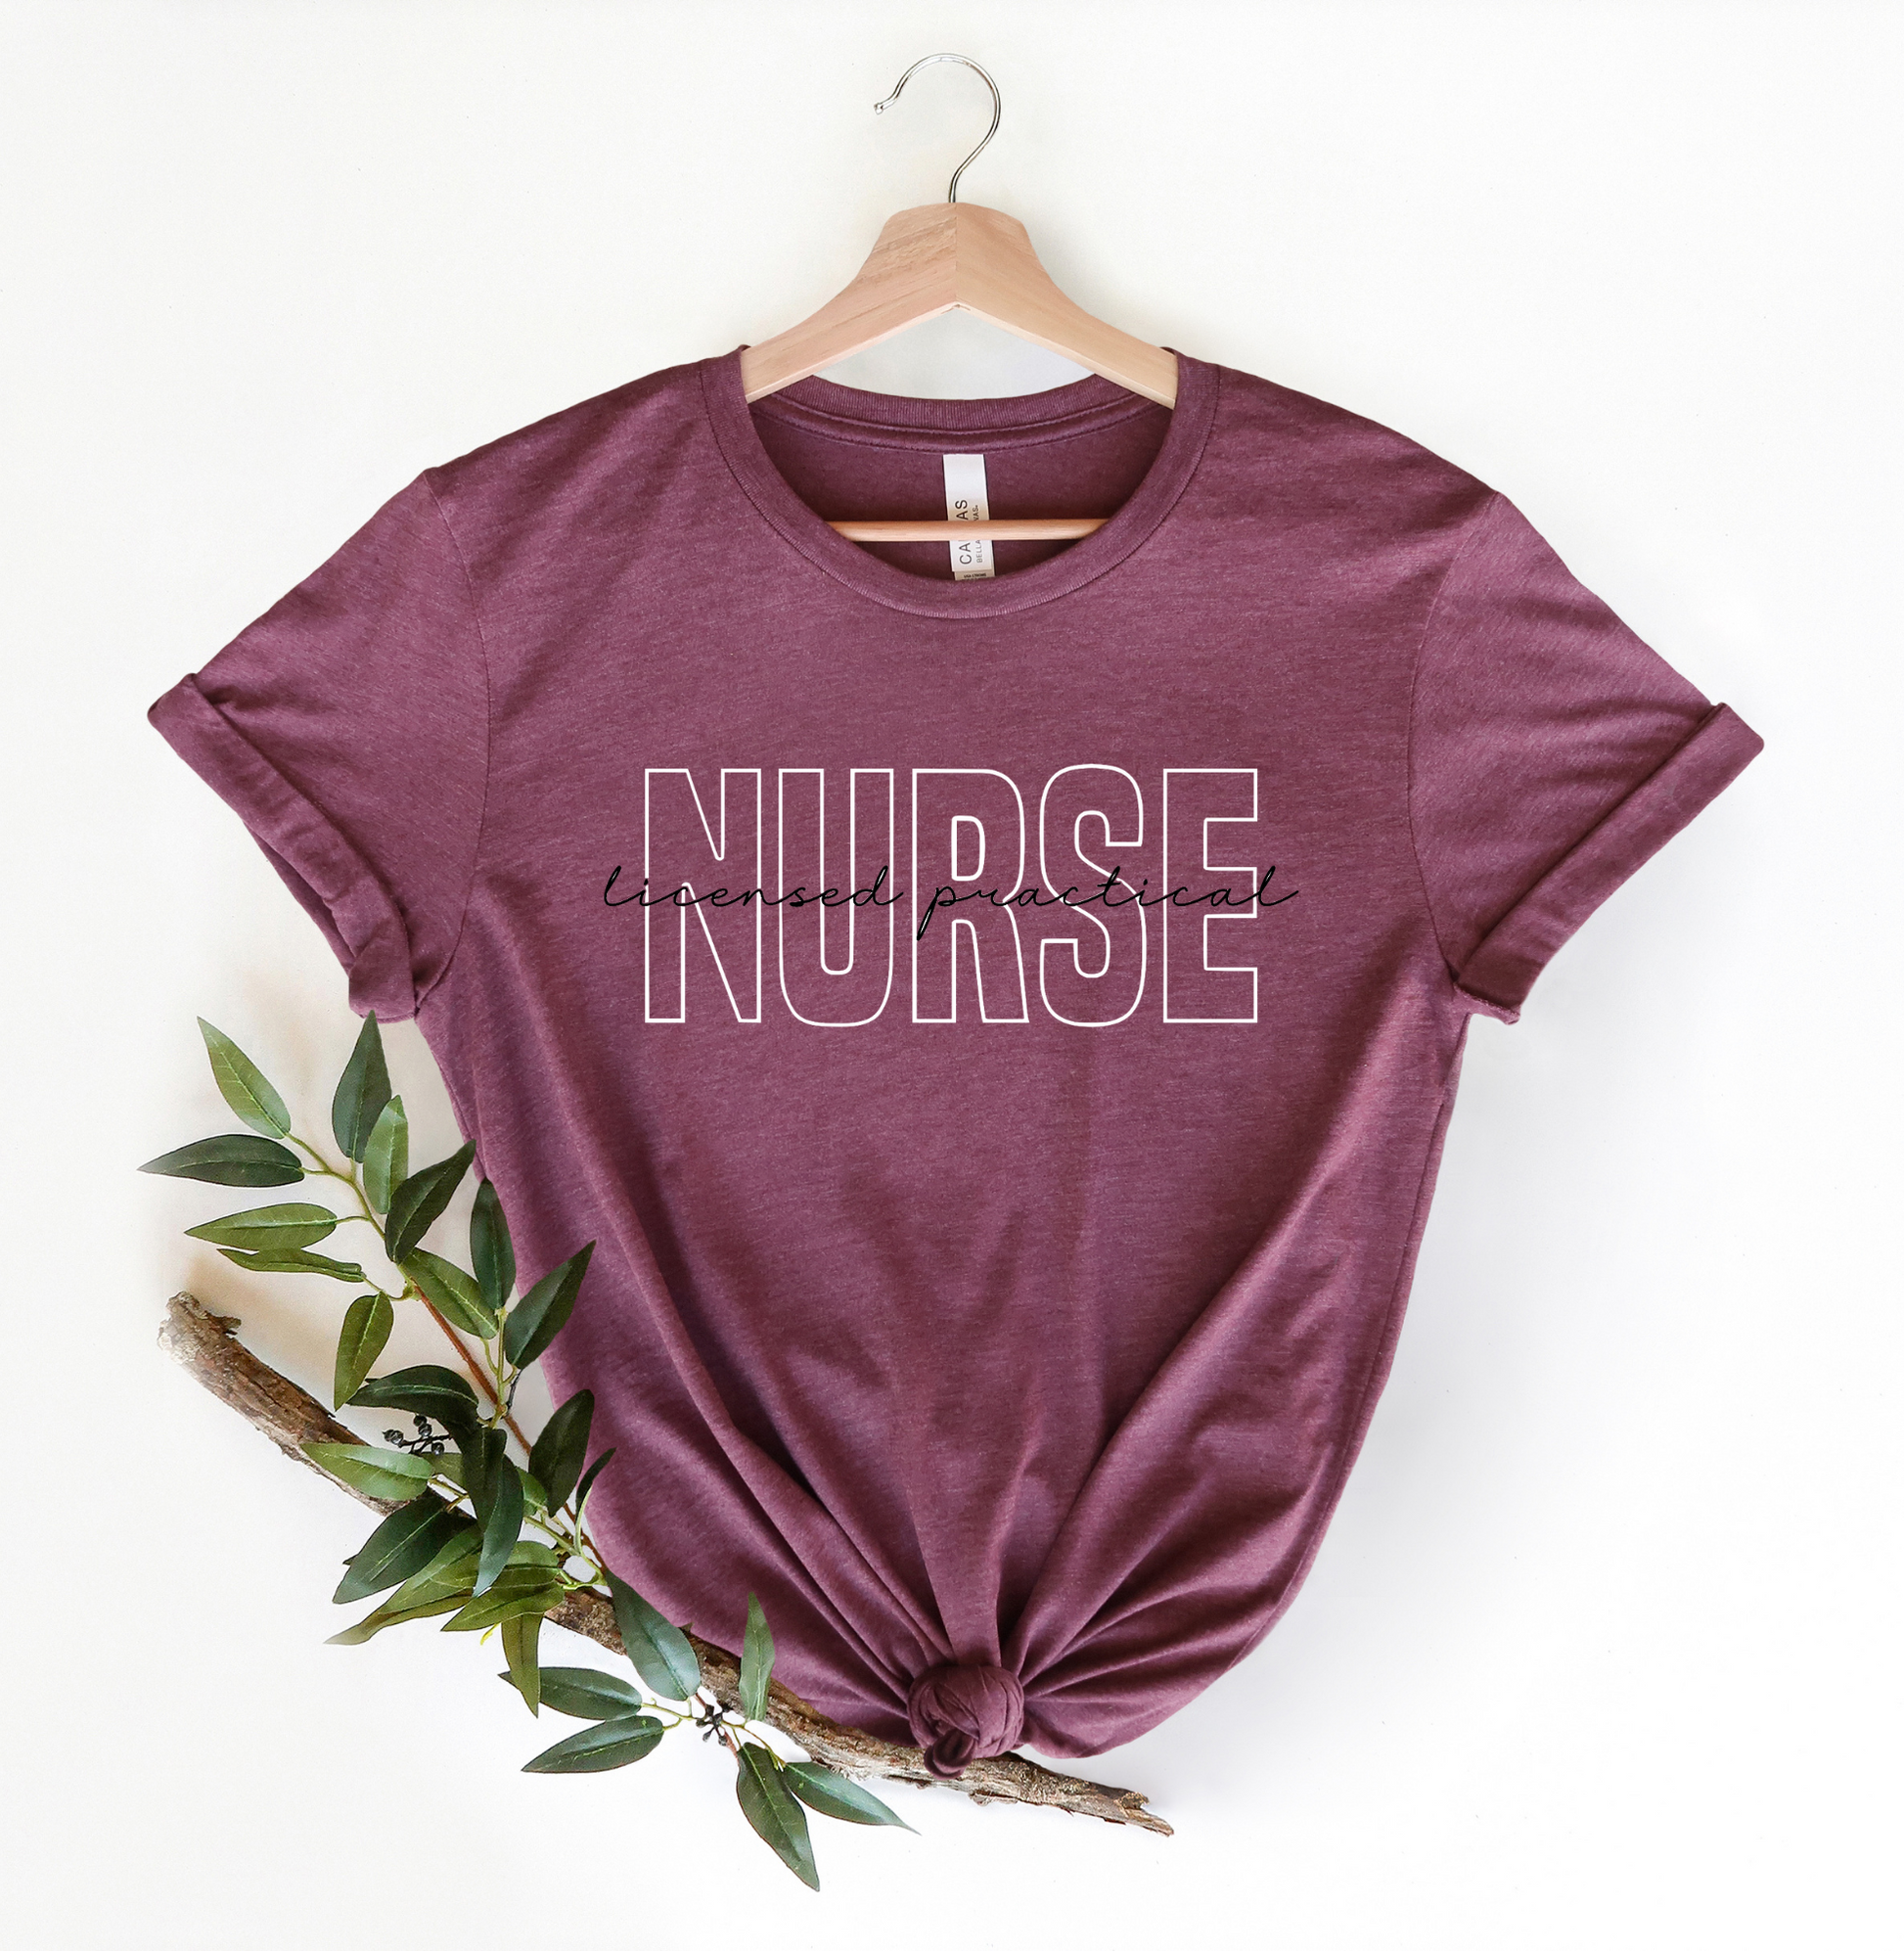 T-Shirt - Nurse